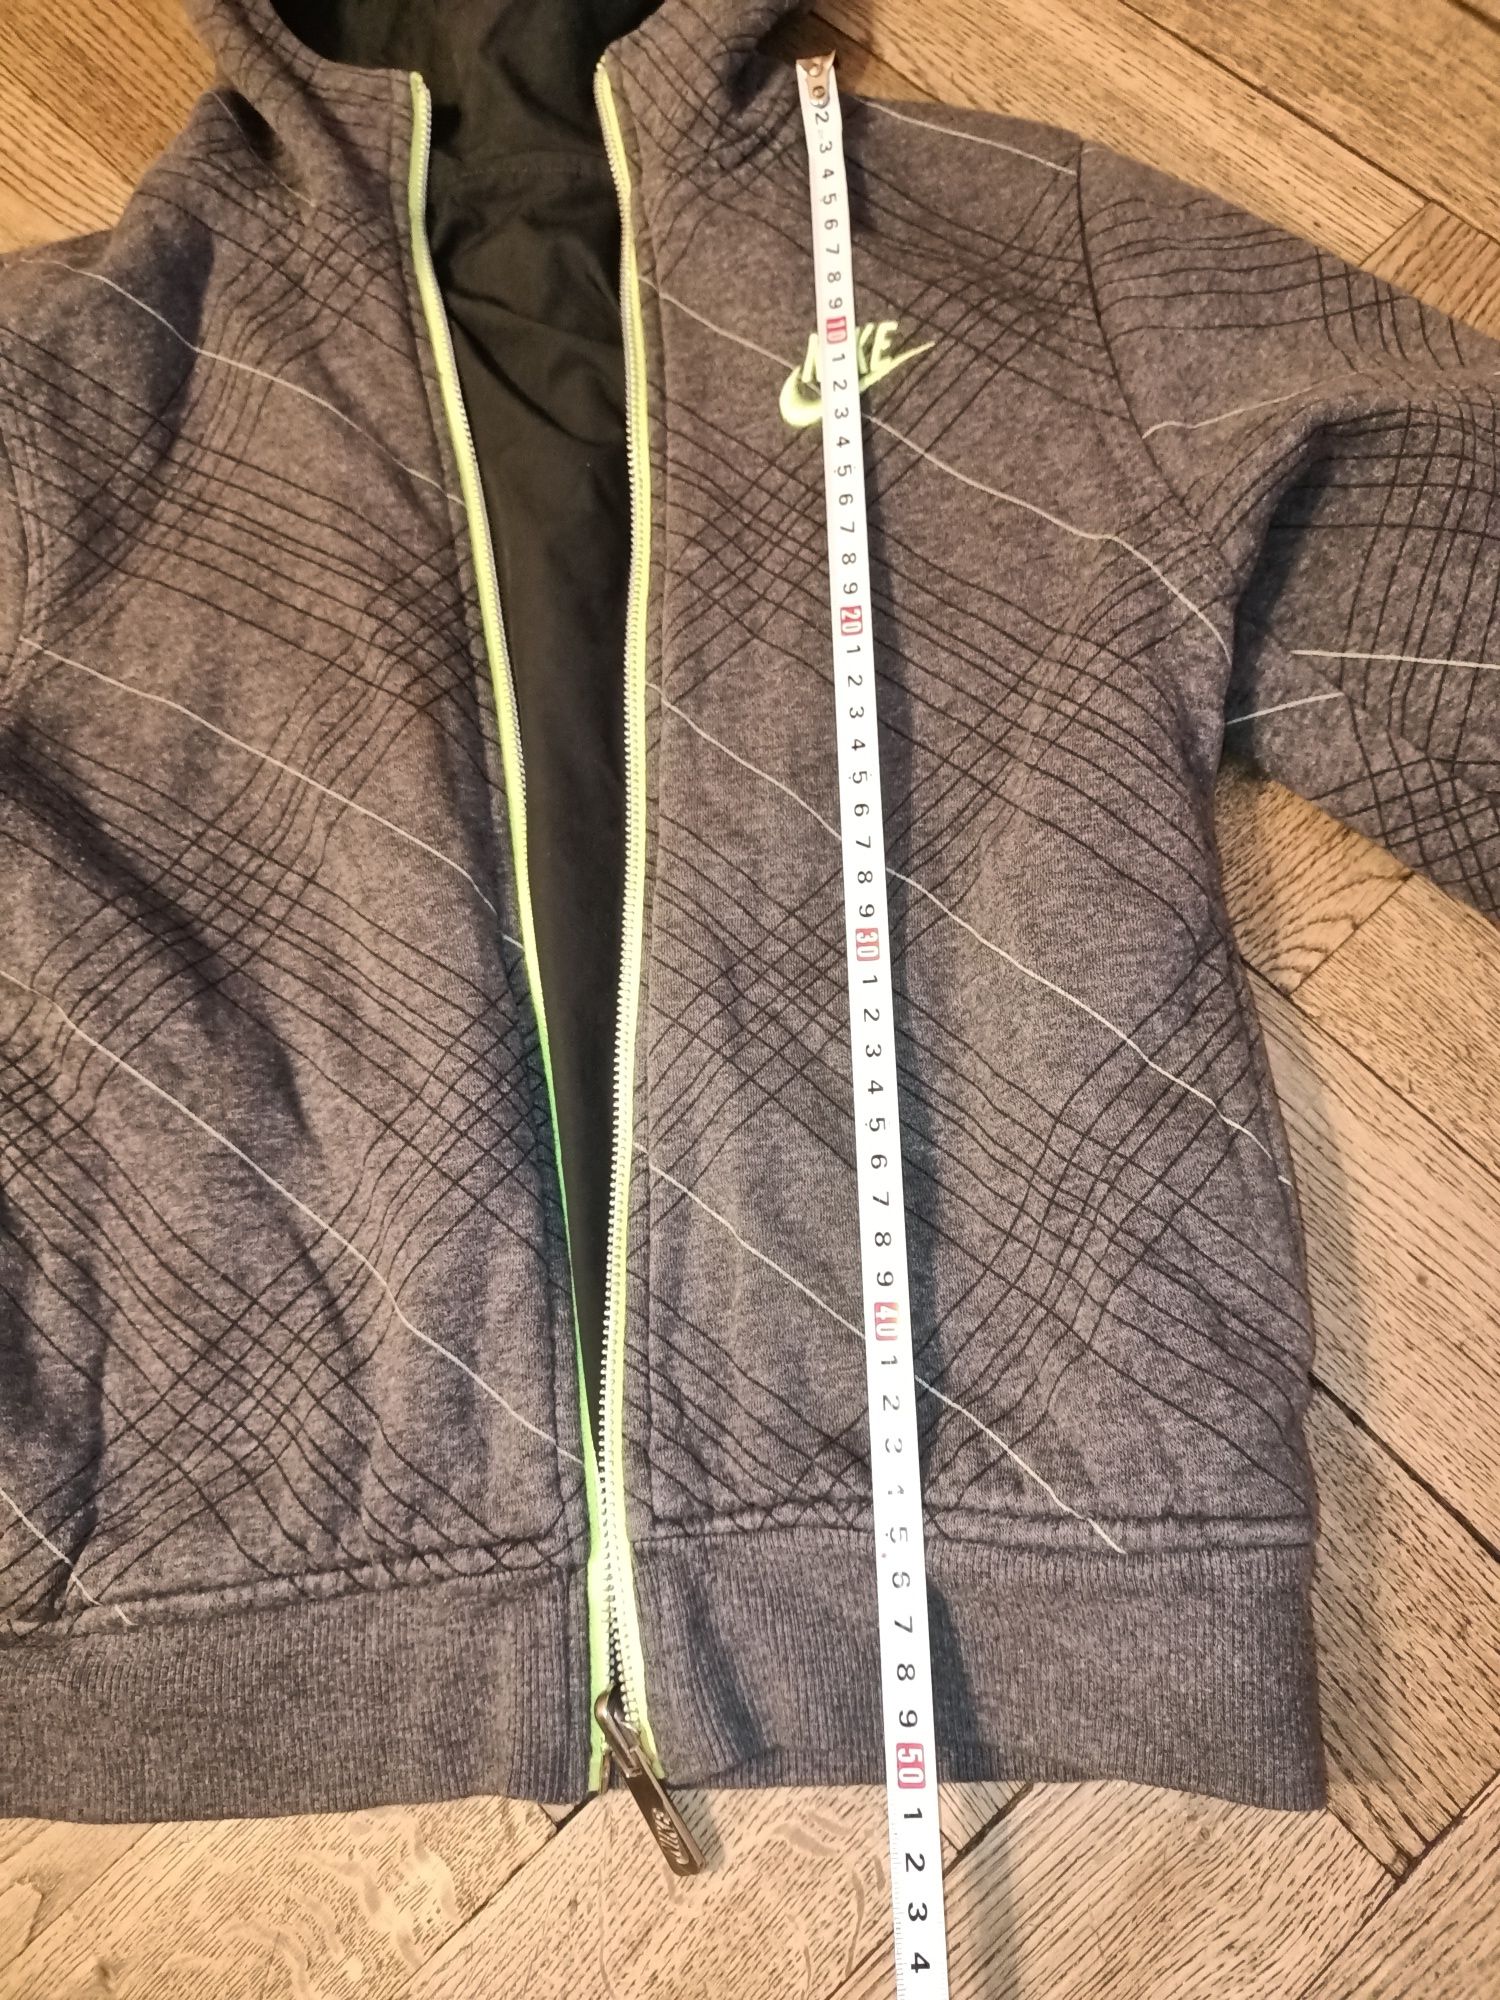 Nike bluza kurtka wiatrówka 128/134 dla chłopca z kapturem dwustronna